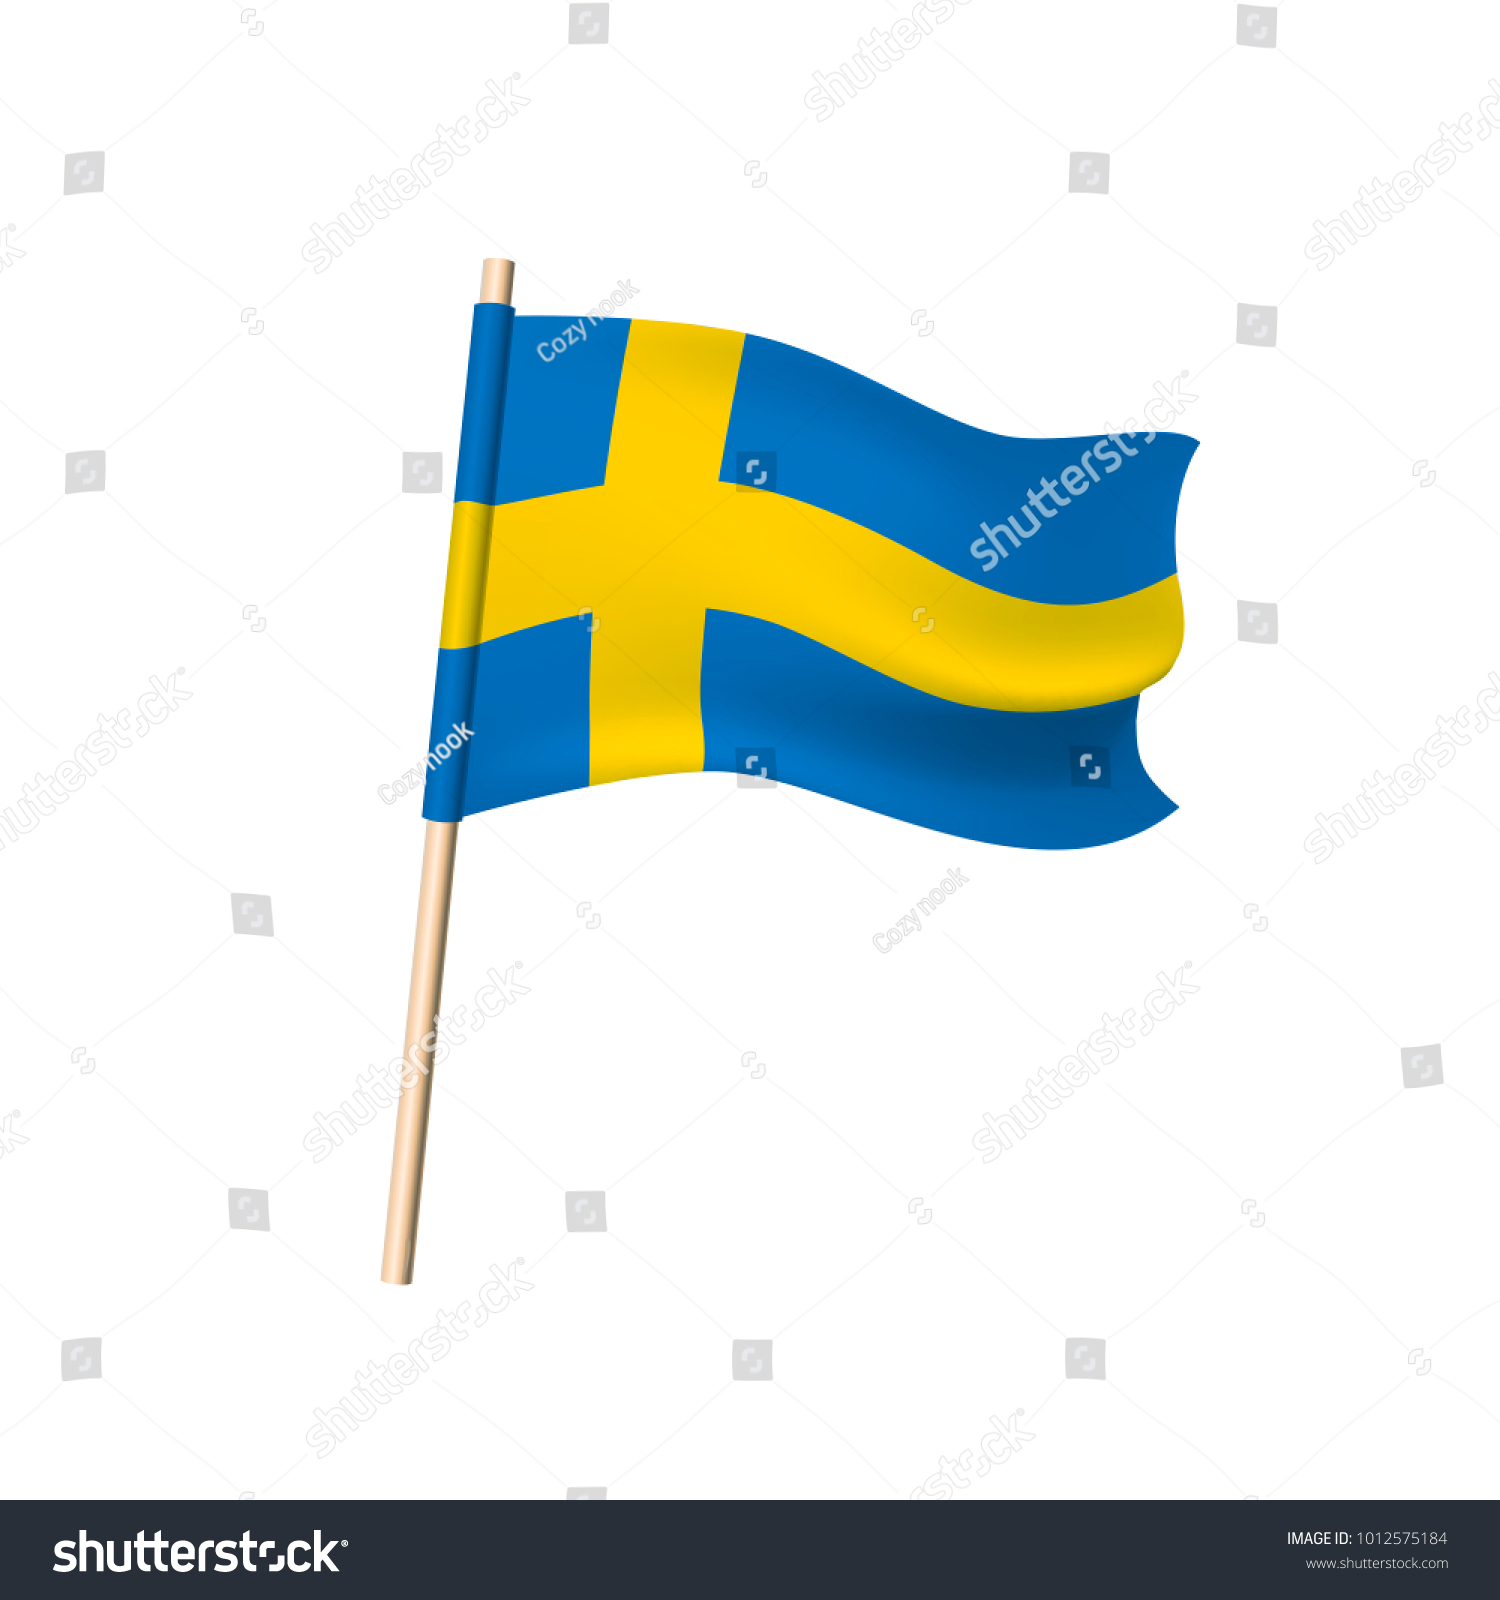 næve Aflede Velkommen Sweden Flag Yellow Cross On Blue Stock Vector (Royalty Free) 1012575184